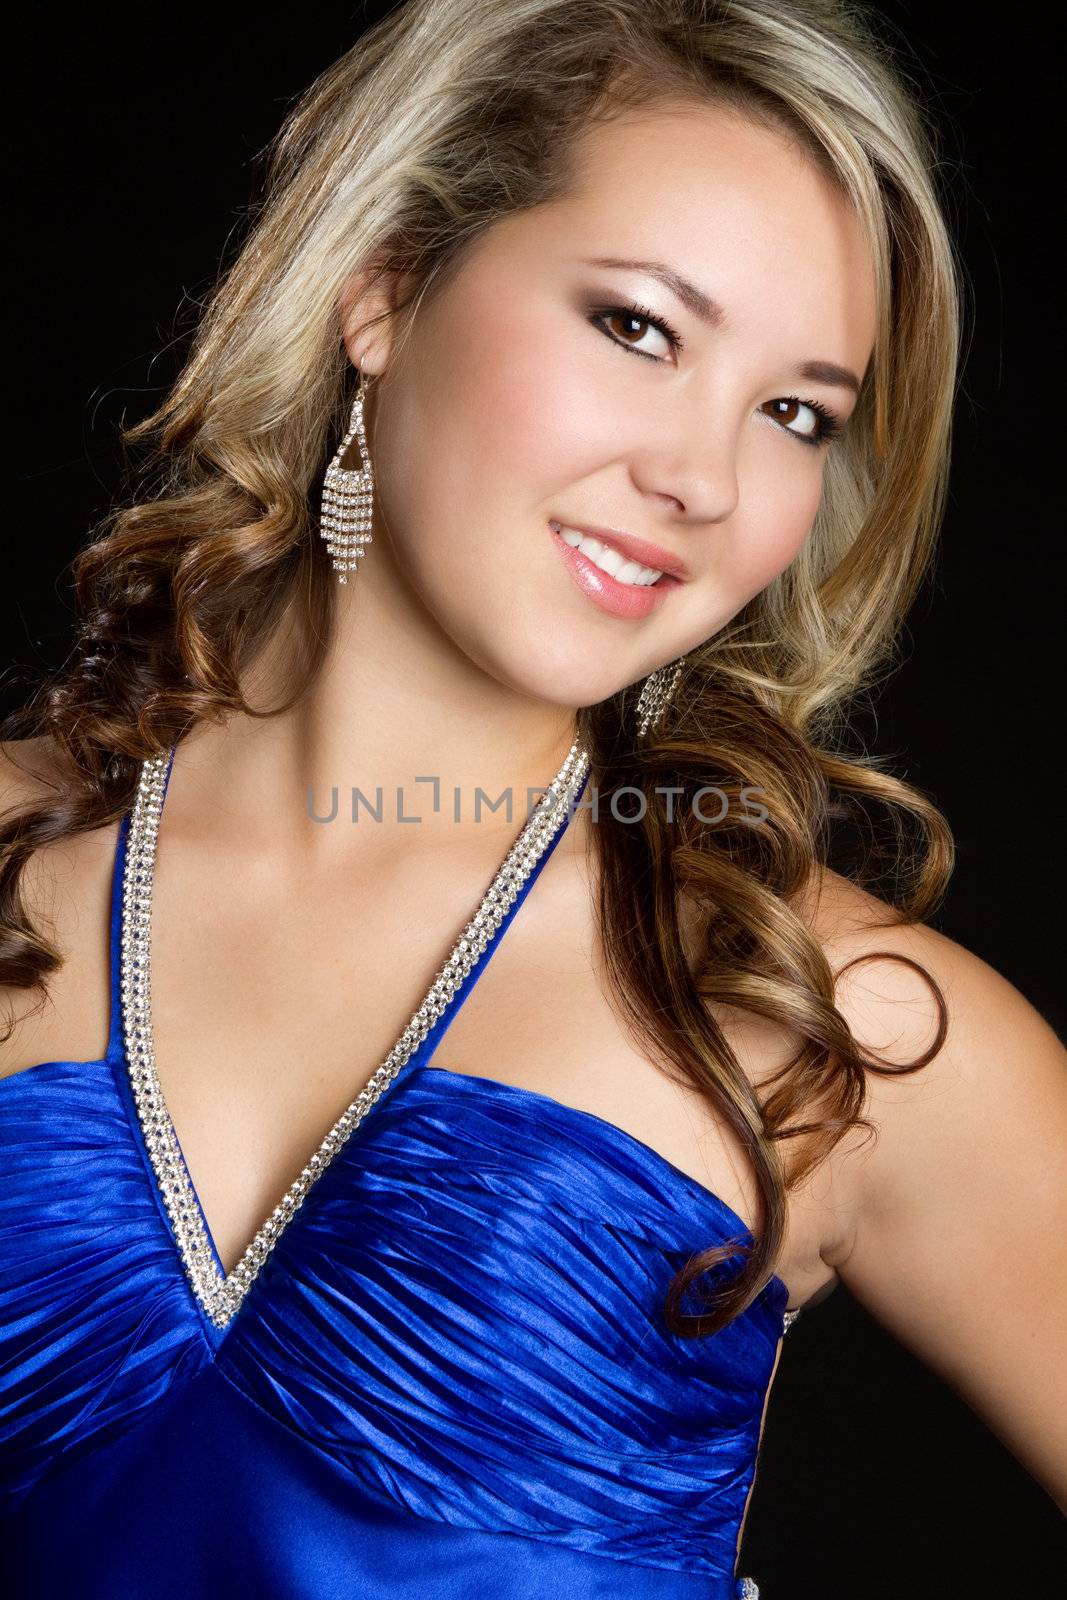 Gorgeous smiling woman closeup portrait